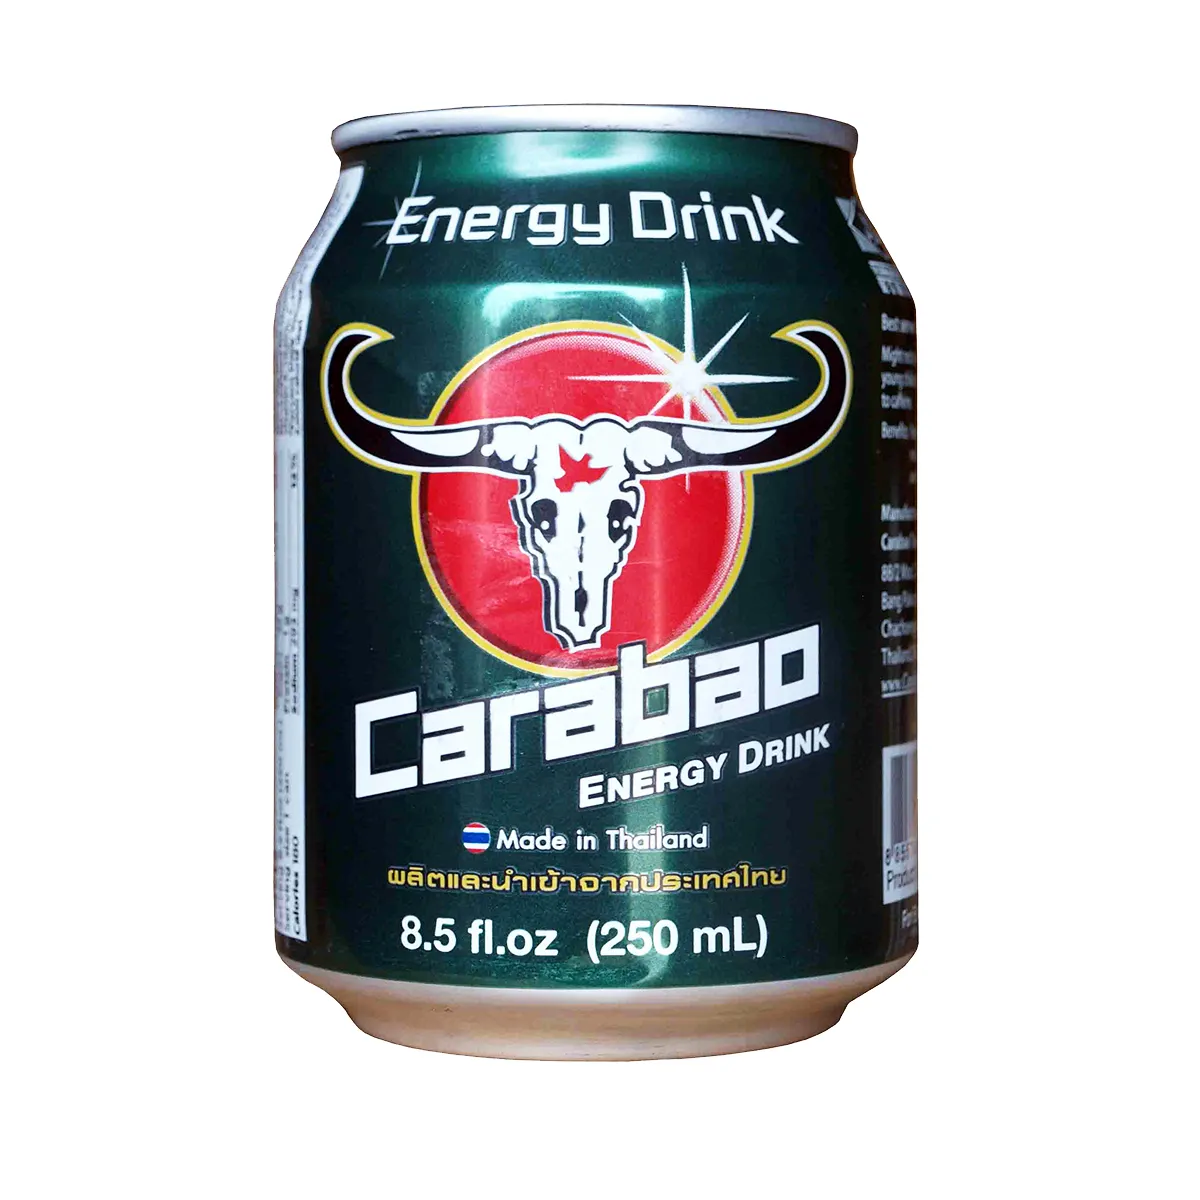 Carabao ऊर्जा पेय थाईलैंड 250ml कर सकते हैं-सबसे अच्छा बेच ऊर्जा पेय